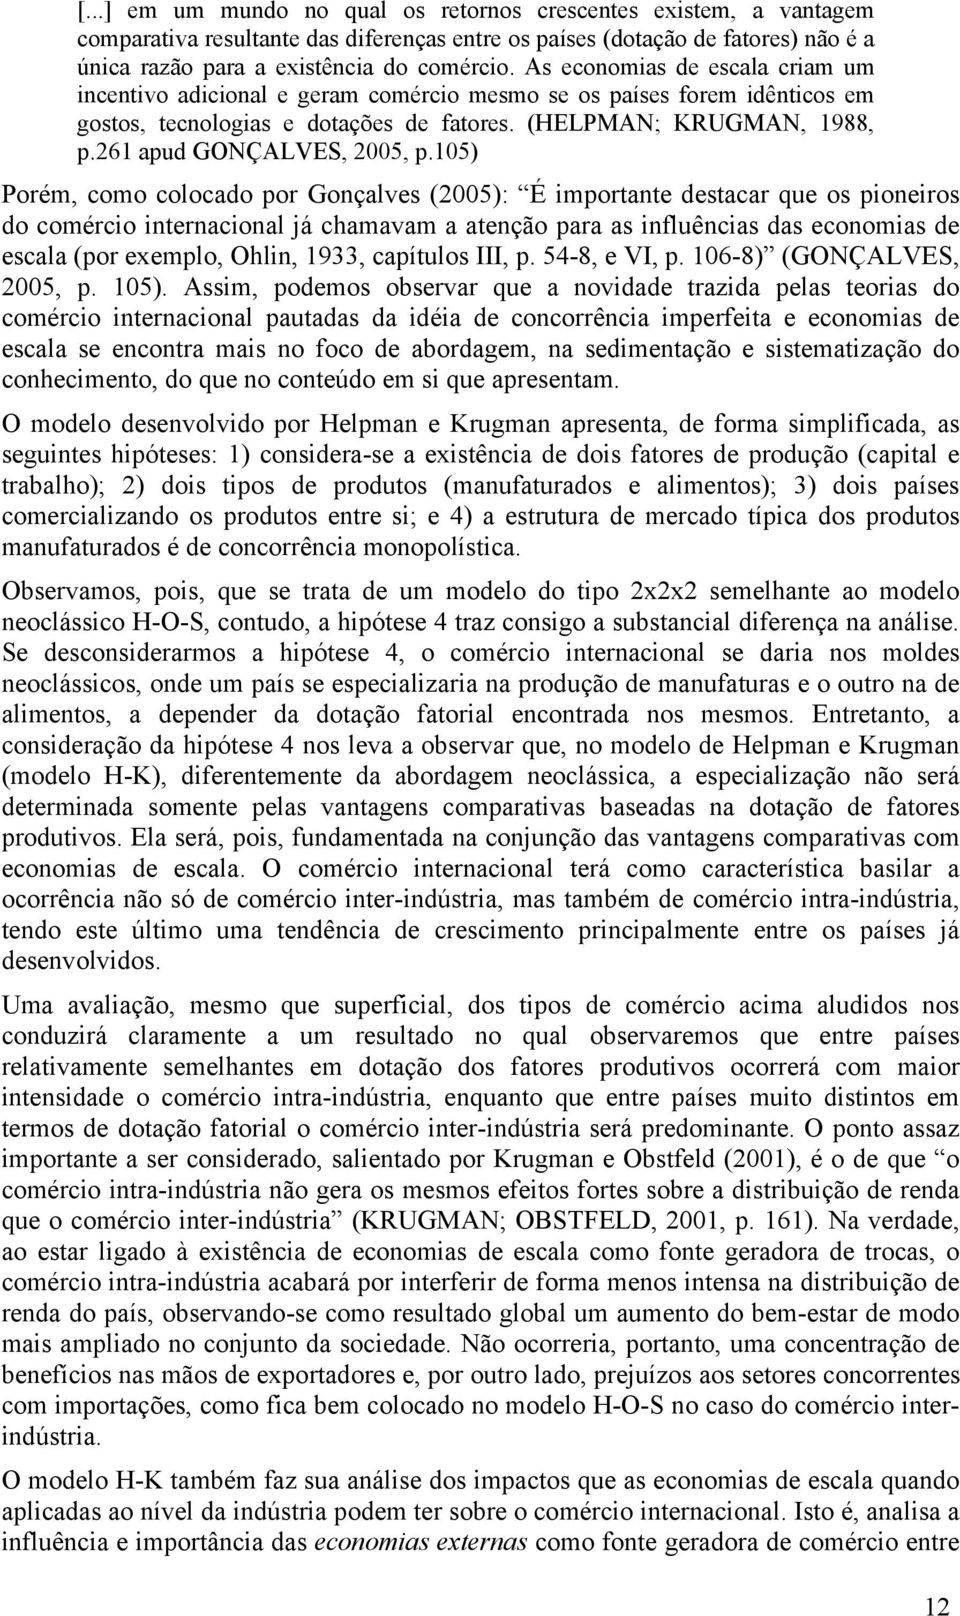 261 apud GONÇALVES, 2005, p.